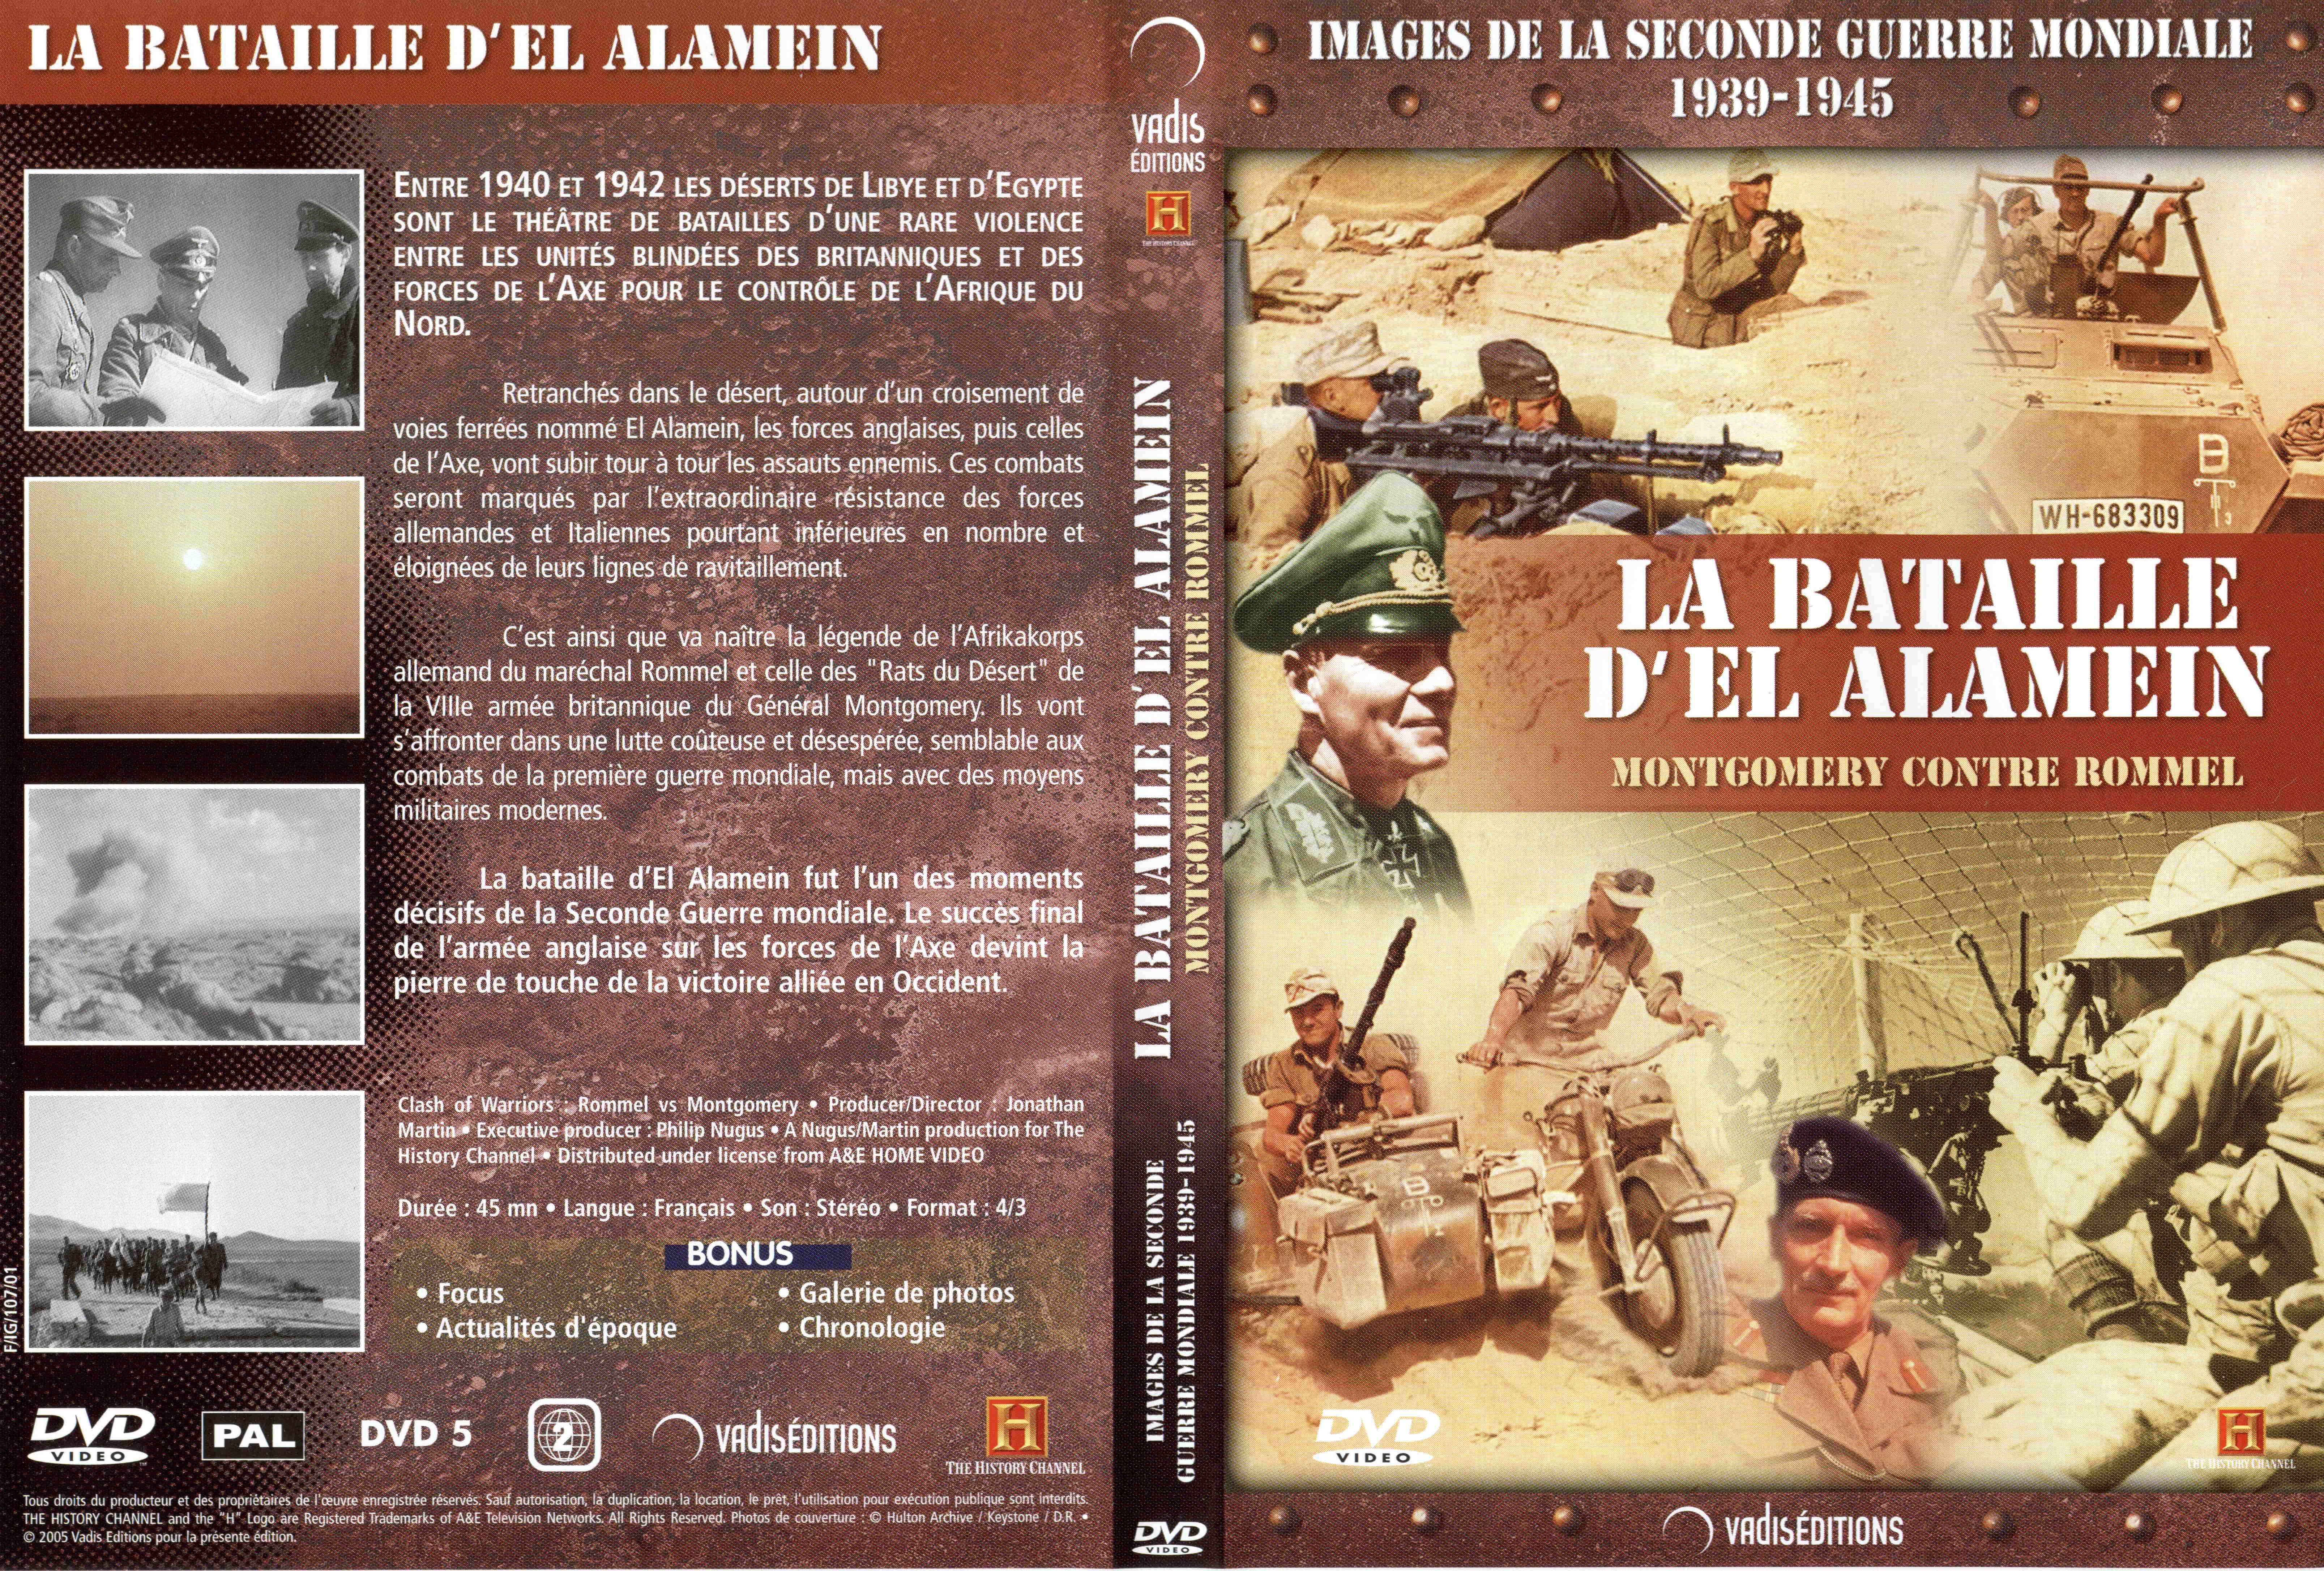 Jaquette DVD Images de la seconde guerre mondiale - La bataille d